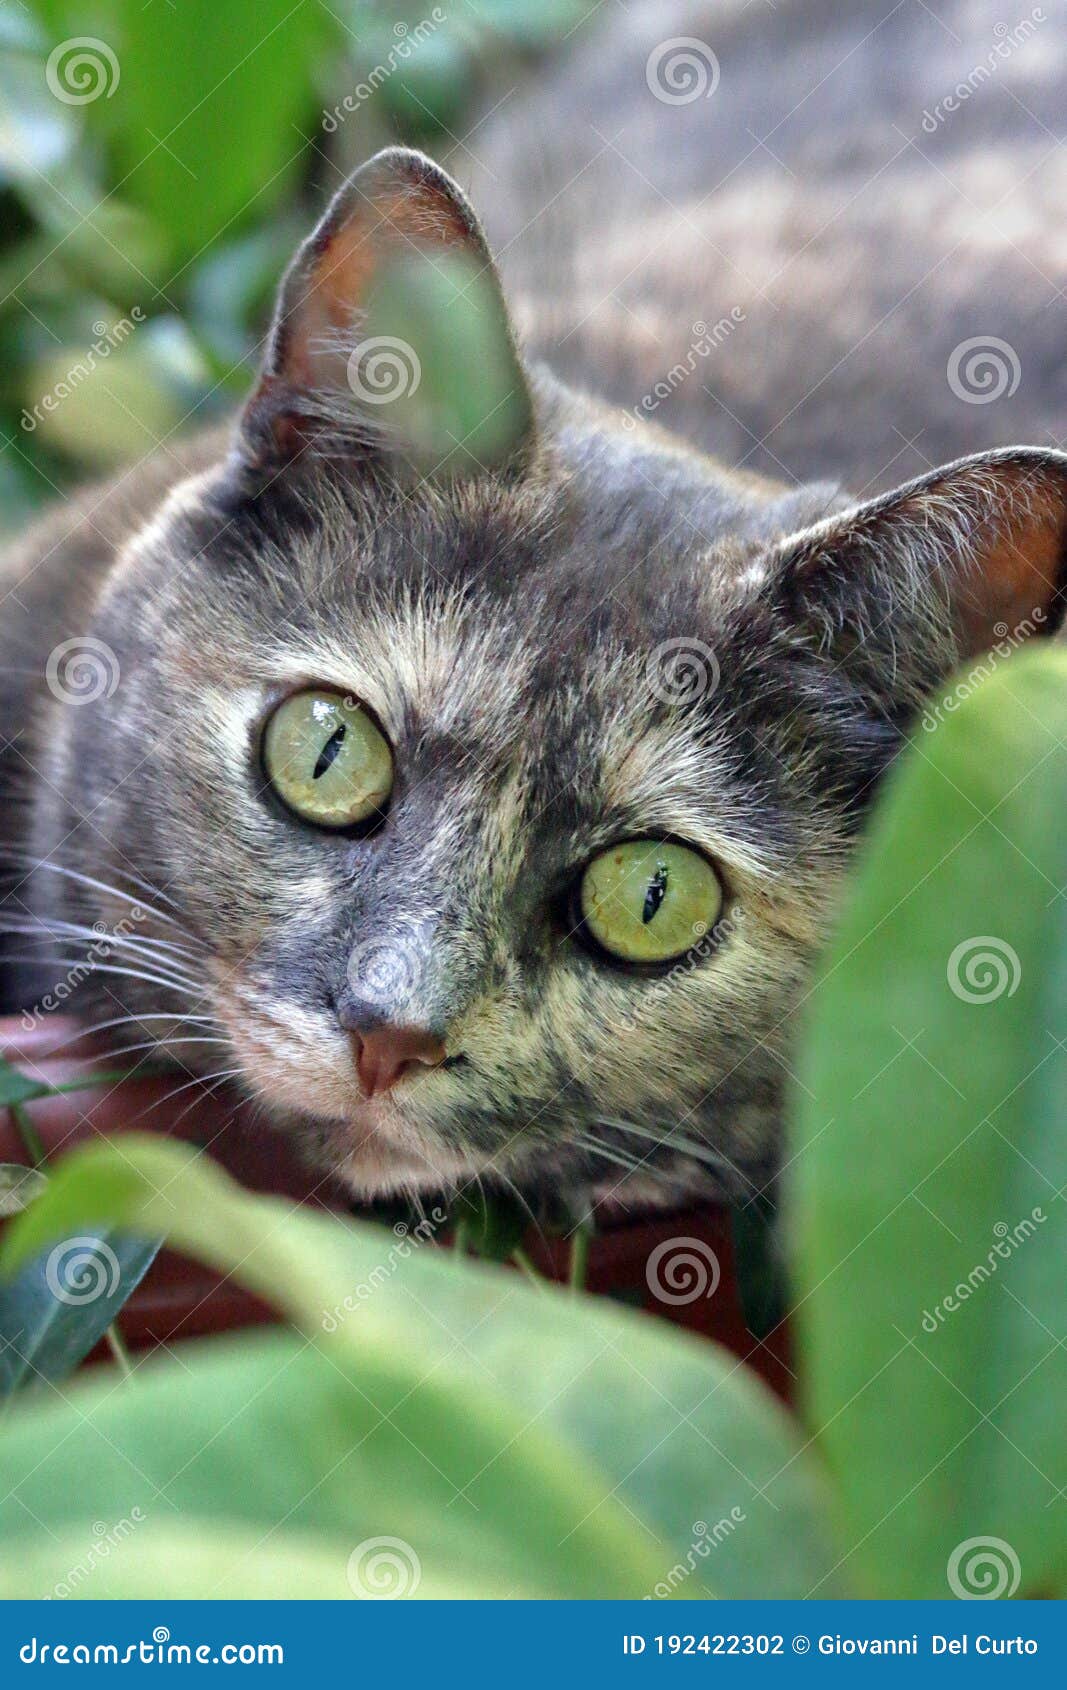 occhi verdi di gatto